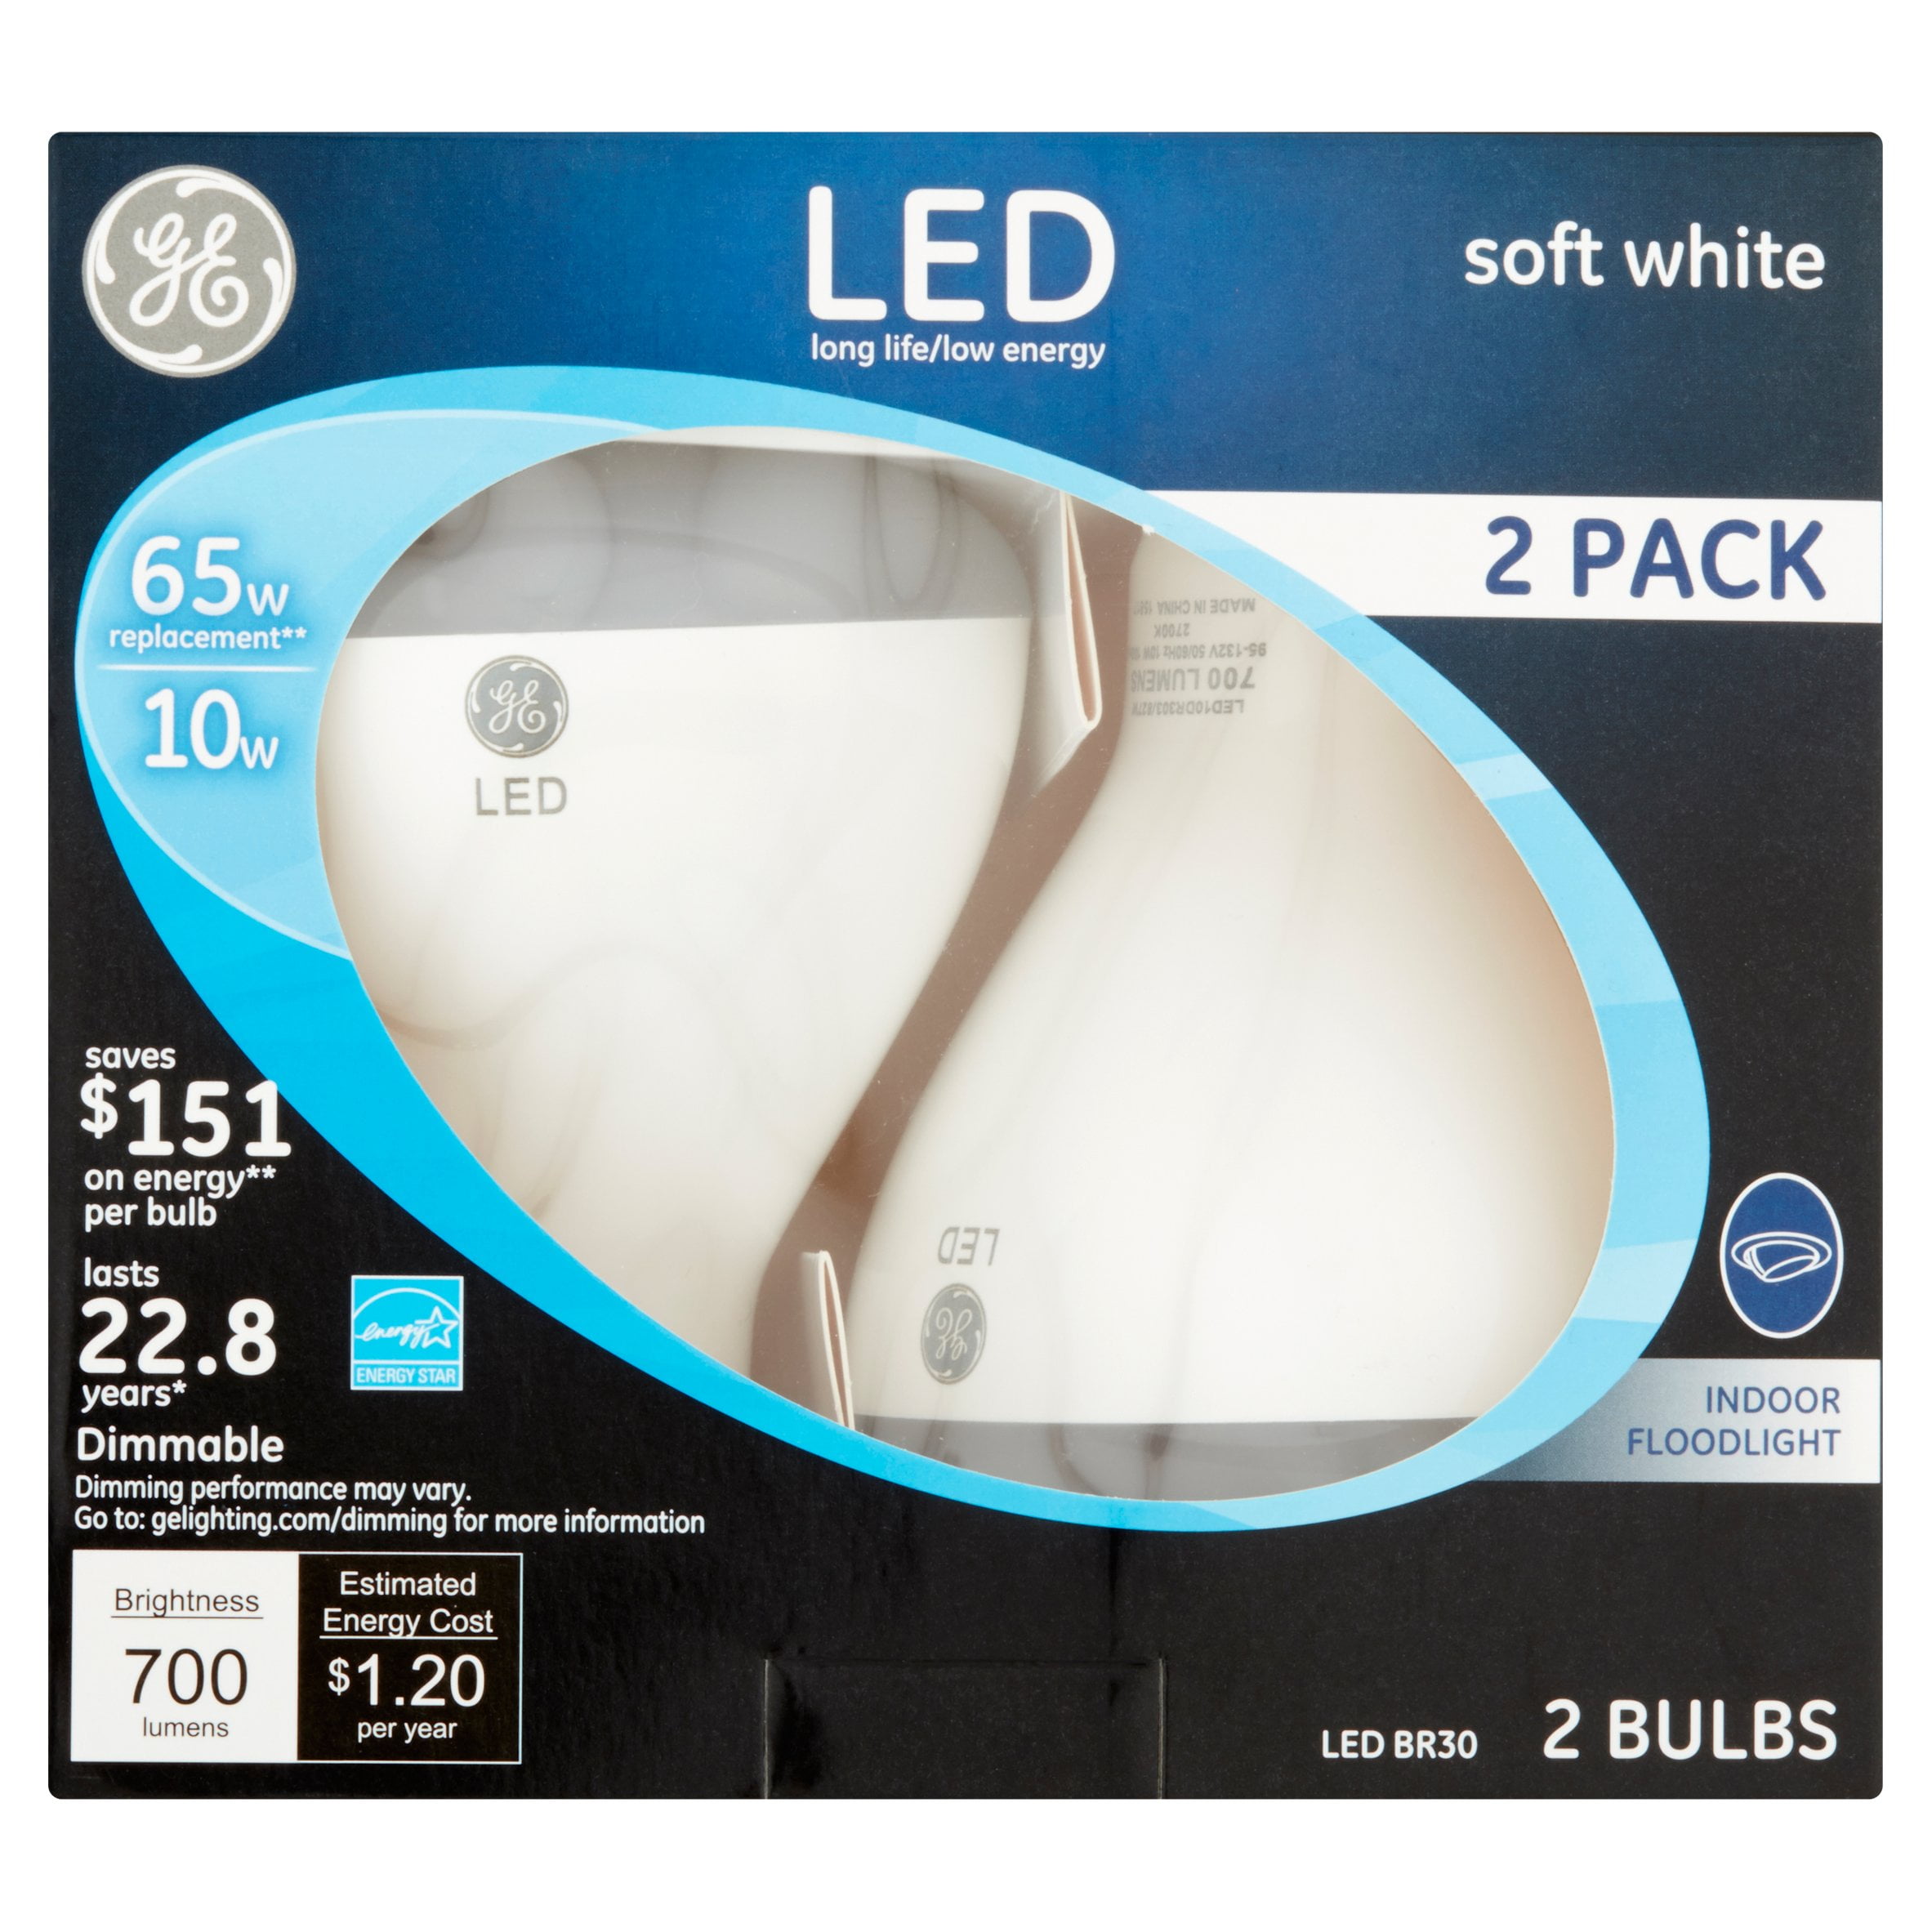 2 GE 21907 Dimmable LED Soft White Light Bulb 10-Watt 65 W Indoor Flood light 